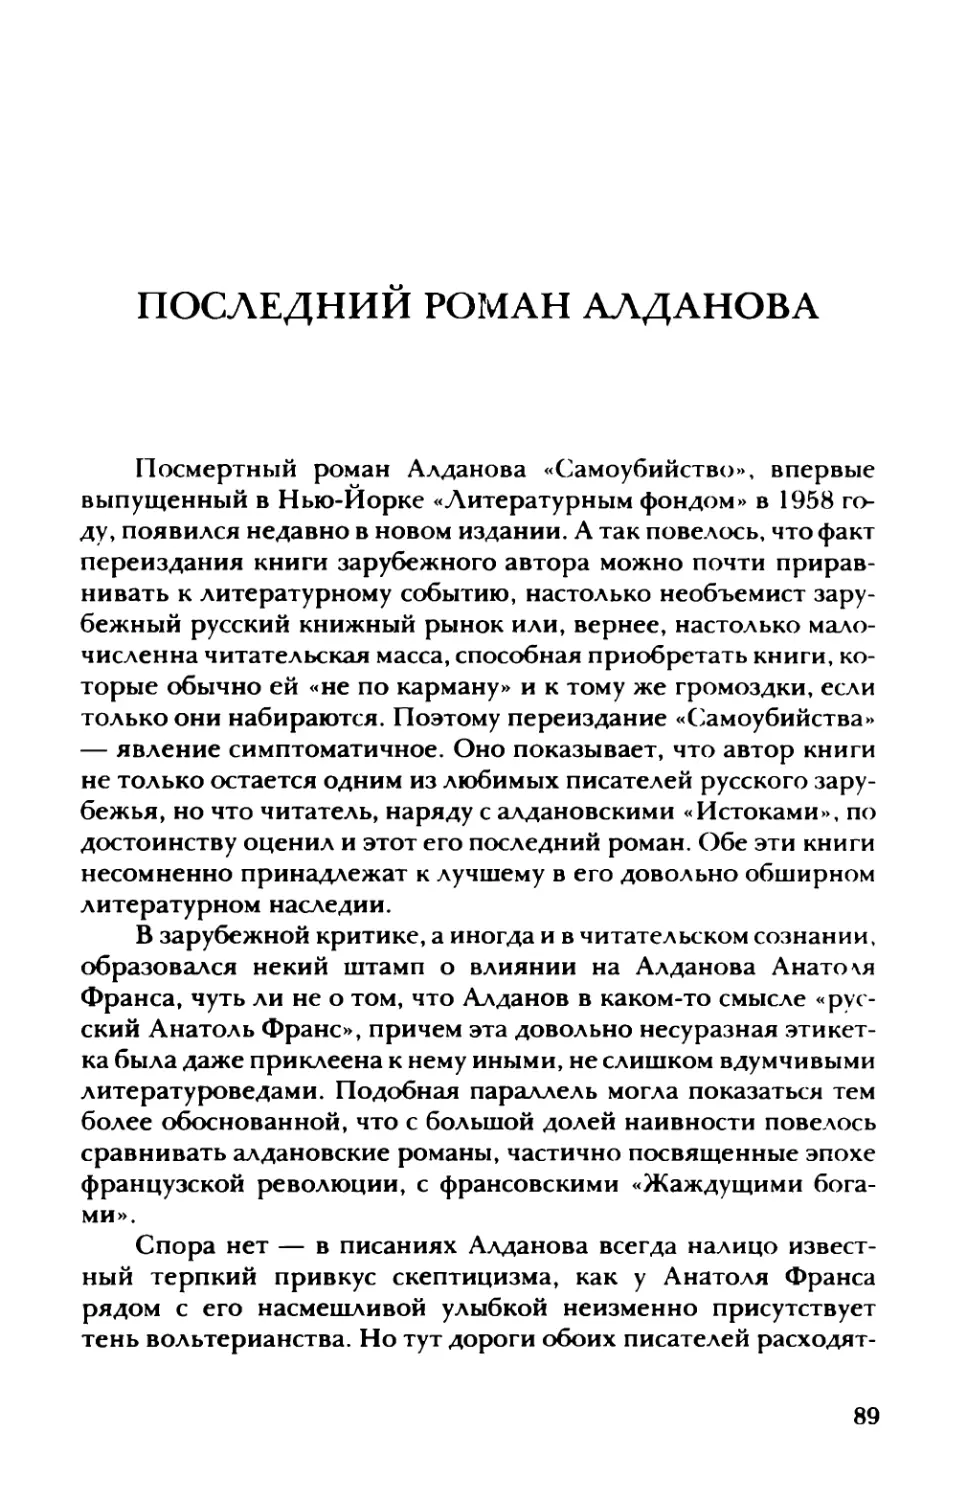 Последний роман Алданова